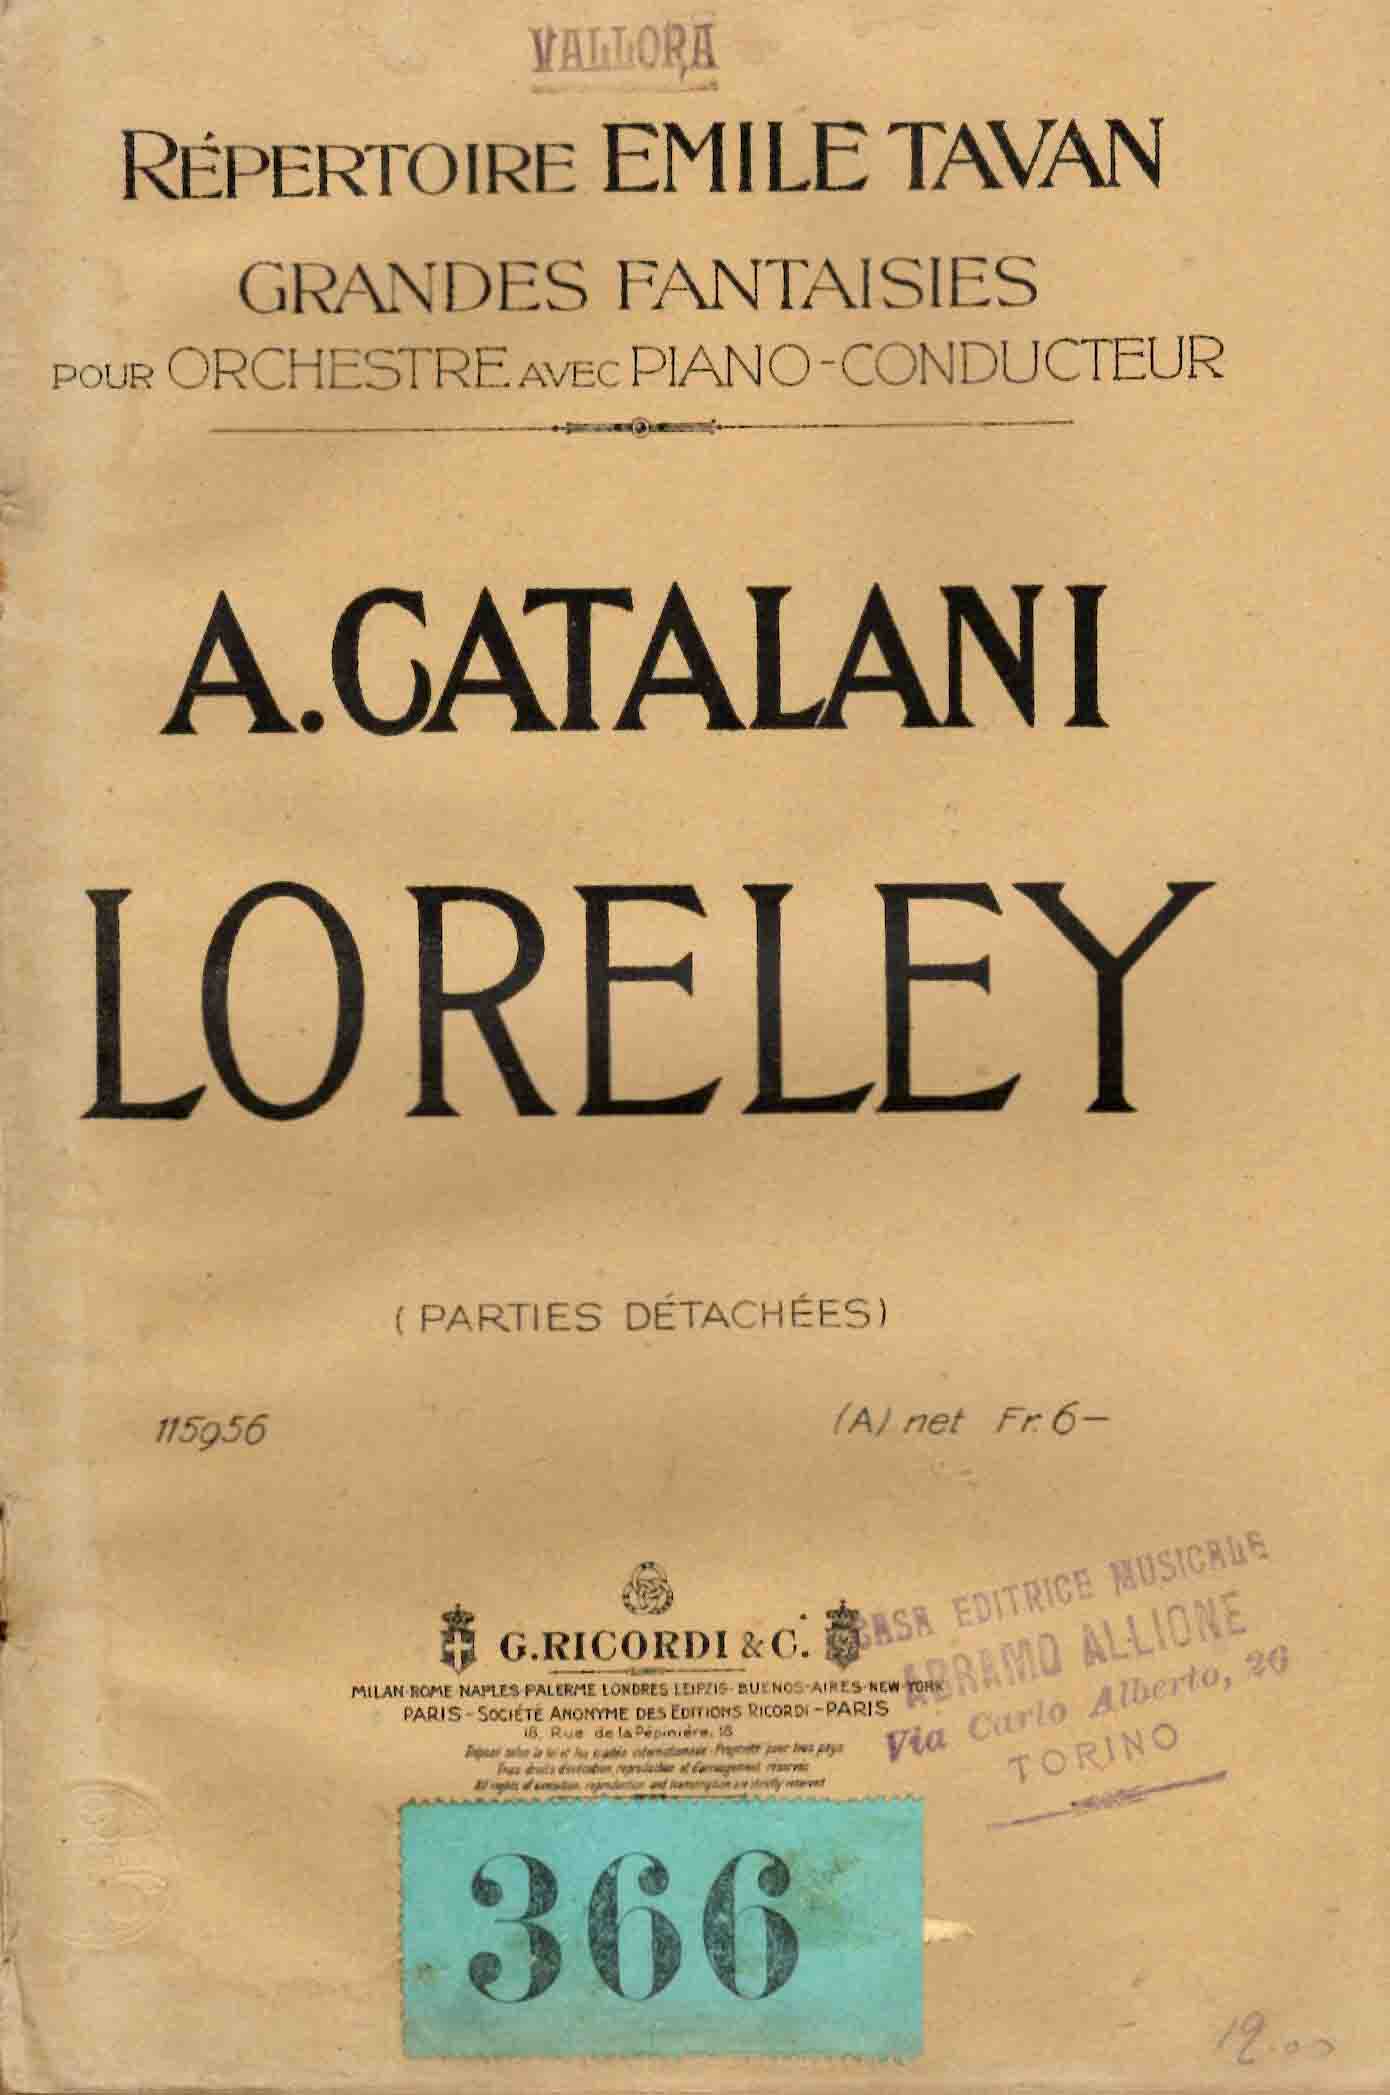 Loreley. Opéra en 3 actes. Grande Fantasie par E. Tavan